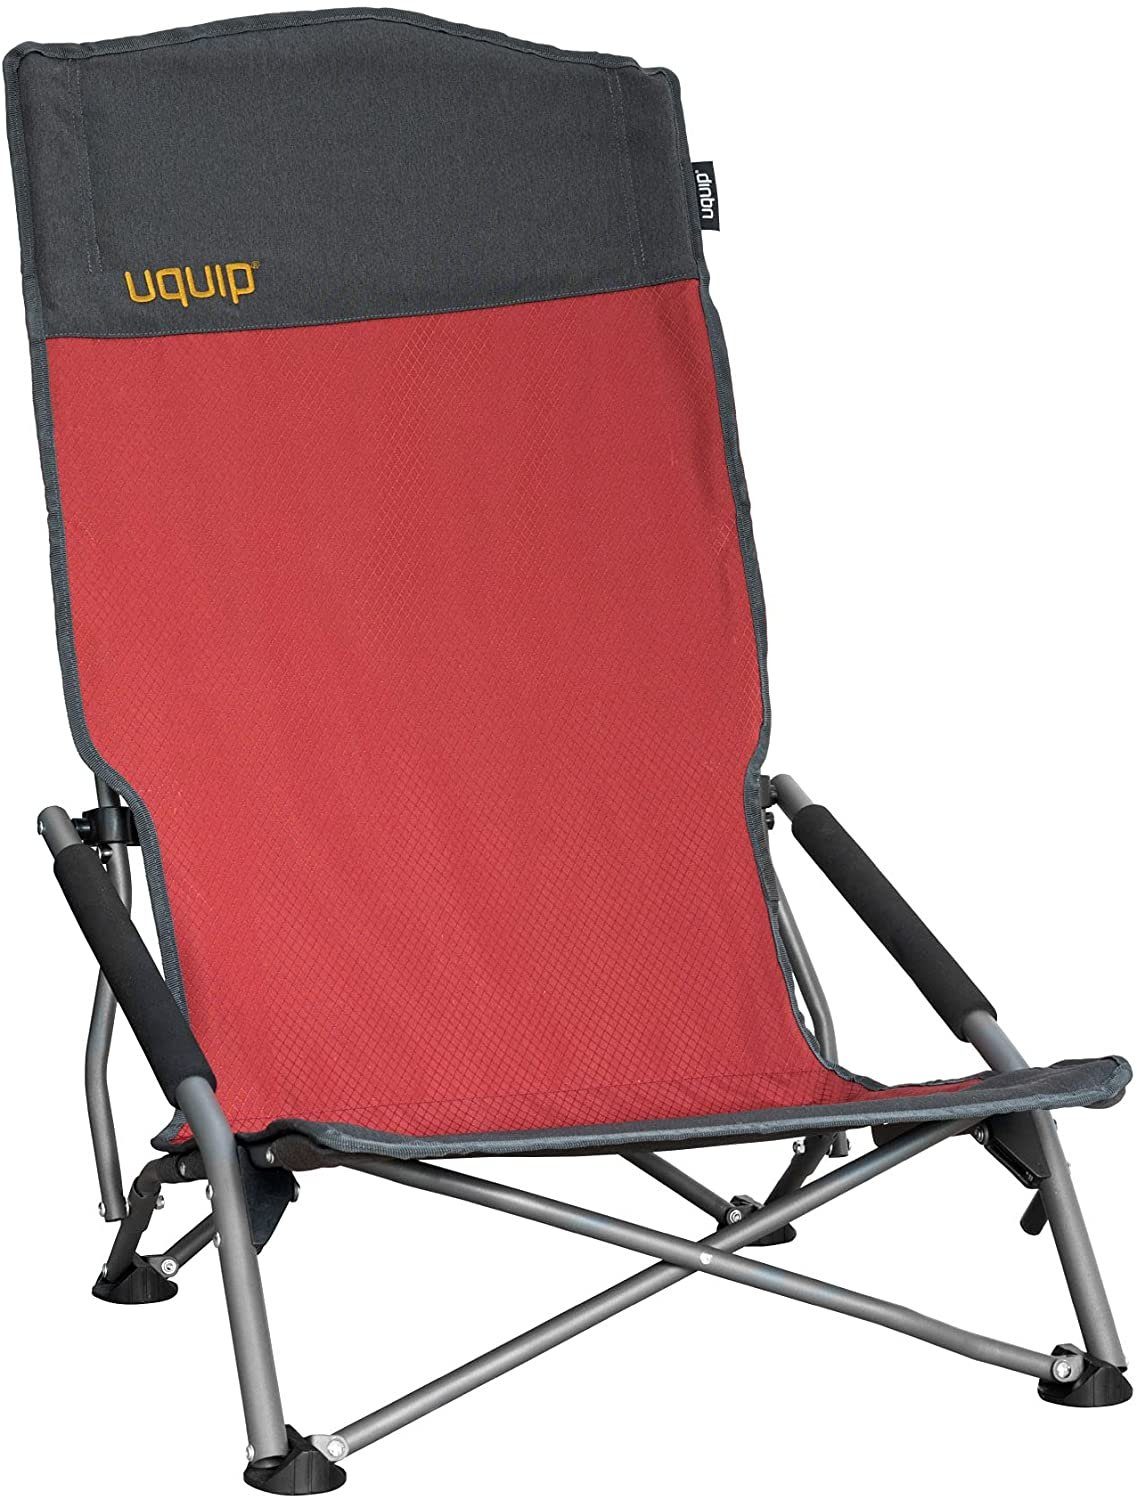 UQUIP Campingstuhl Sandy XL - Bequemer Strandstuhl mit extra hoher  Rückenlehne - Rot, niedrige Sitzhöhe, extre hohe Rückenlehne, gepolsterte  Armlehnen, breite Füße gegen Einsinken auf weichem Boden